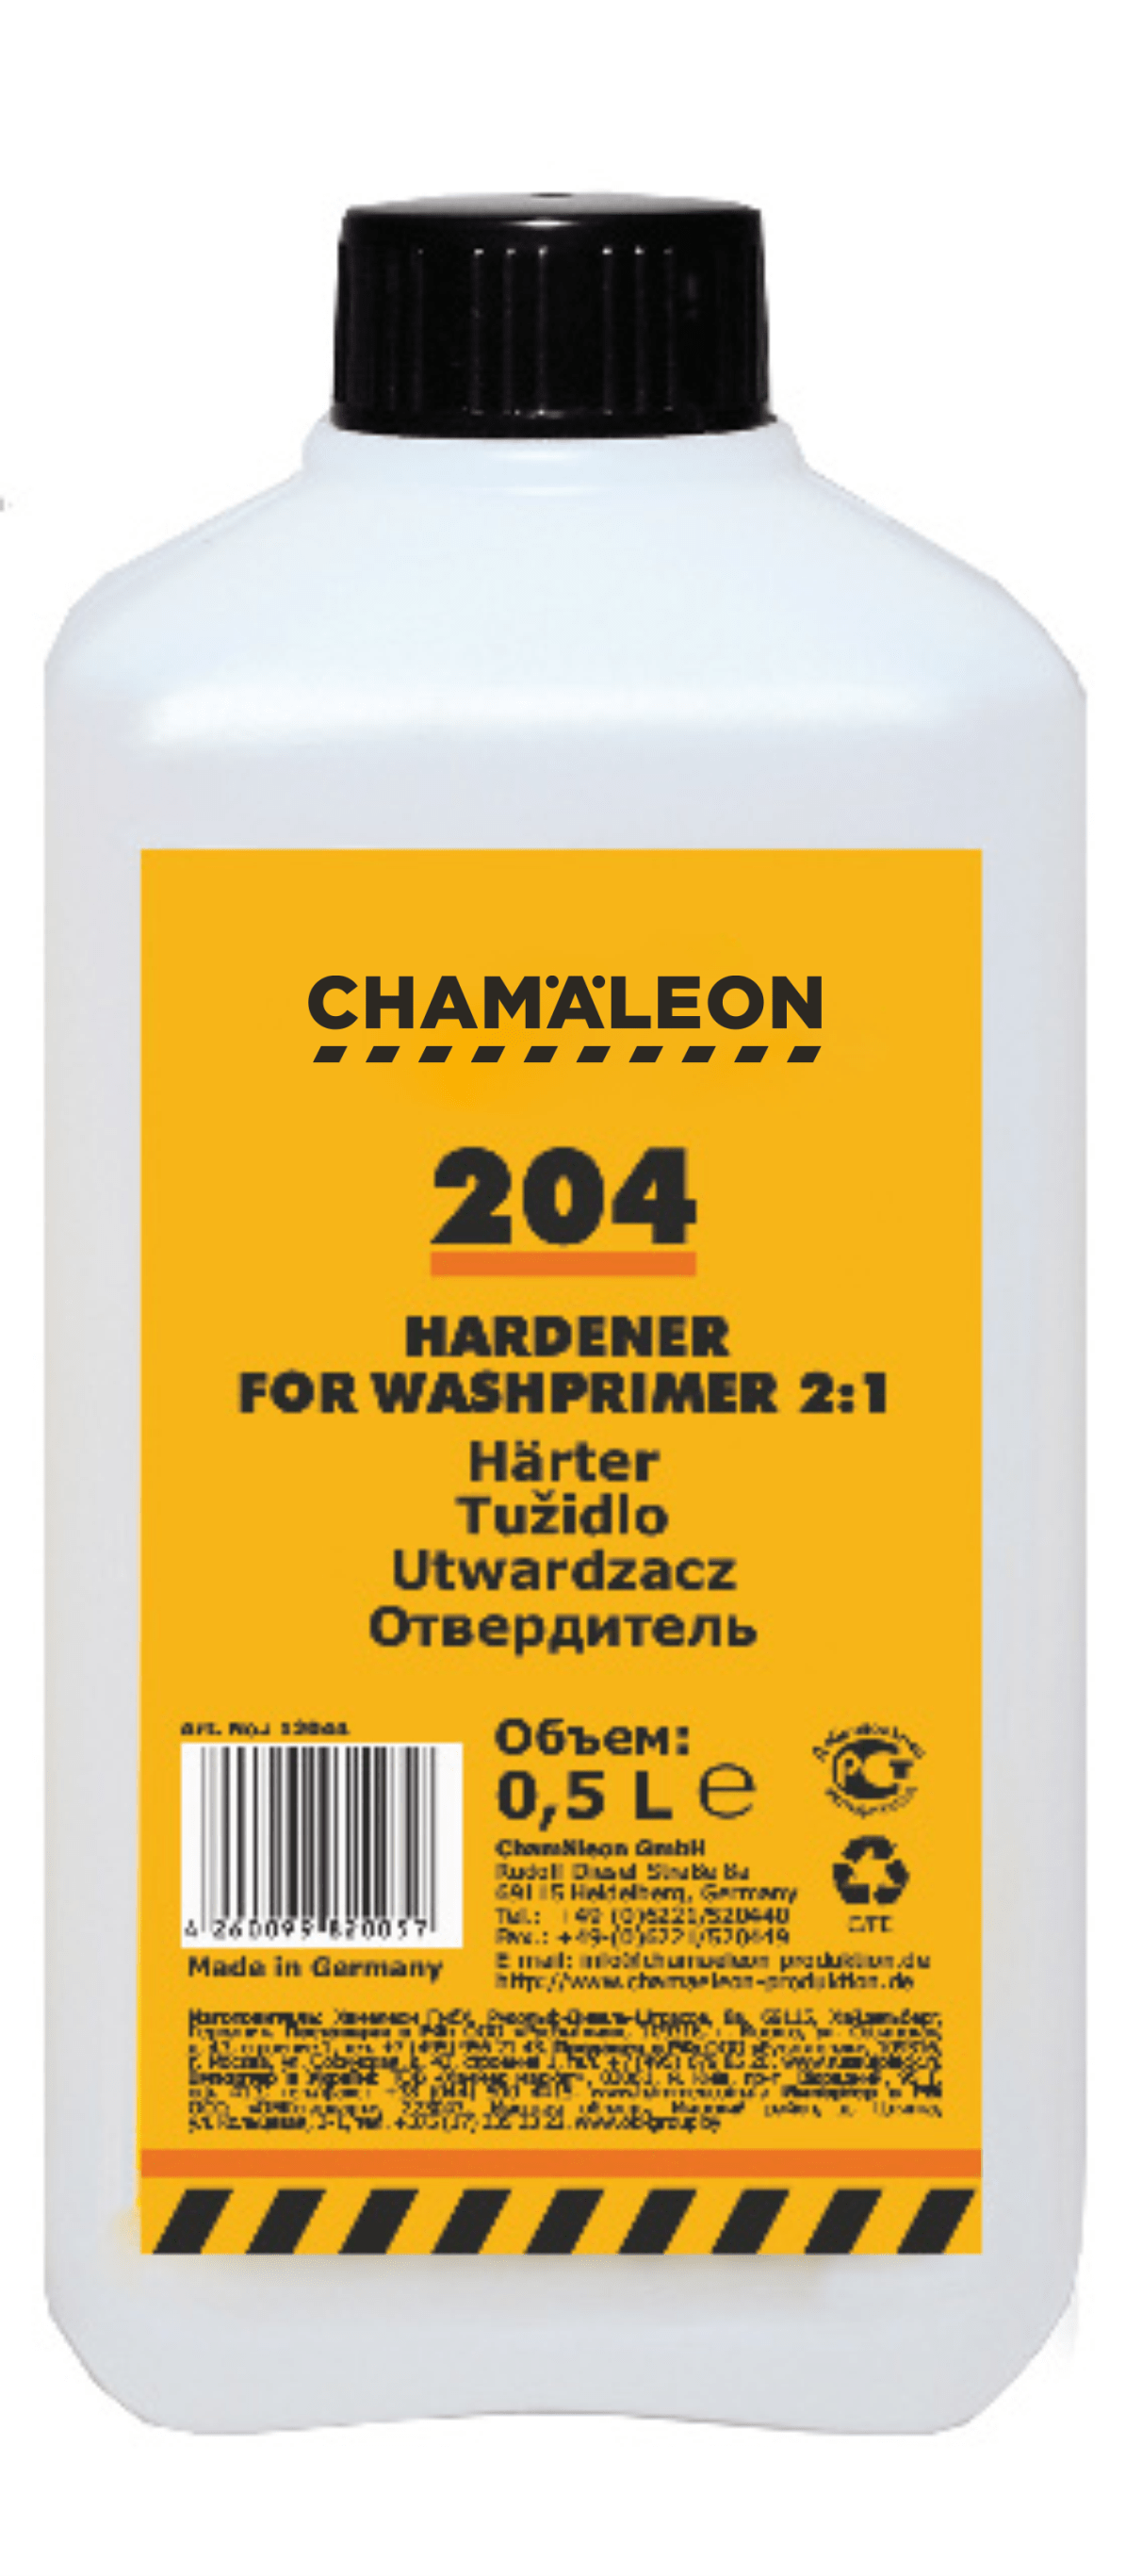 Hardener for Wash primer